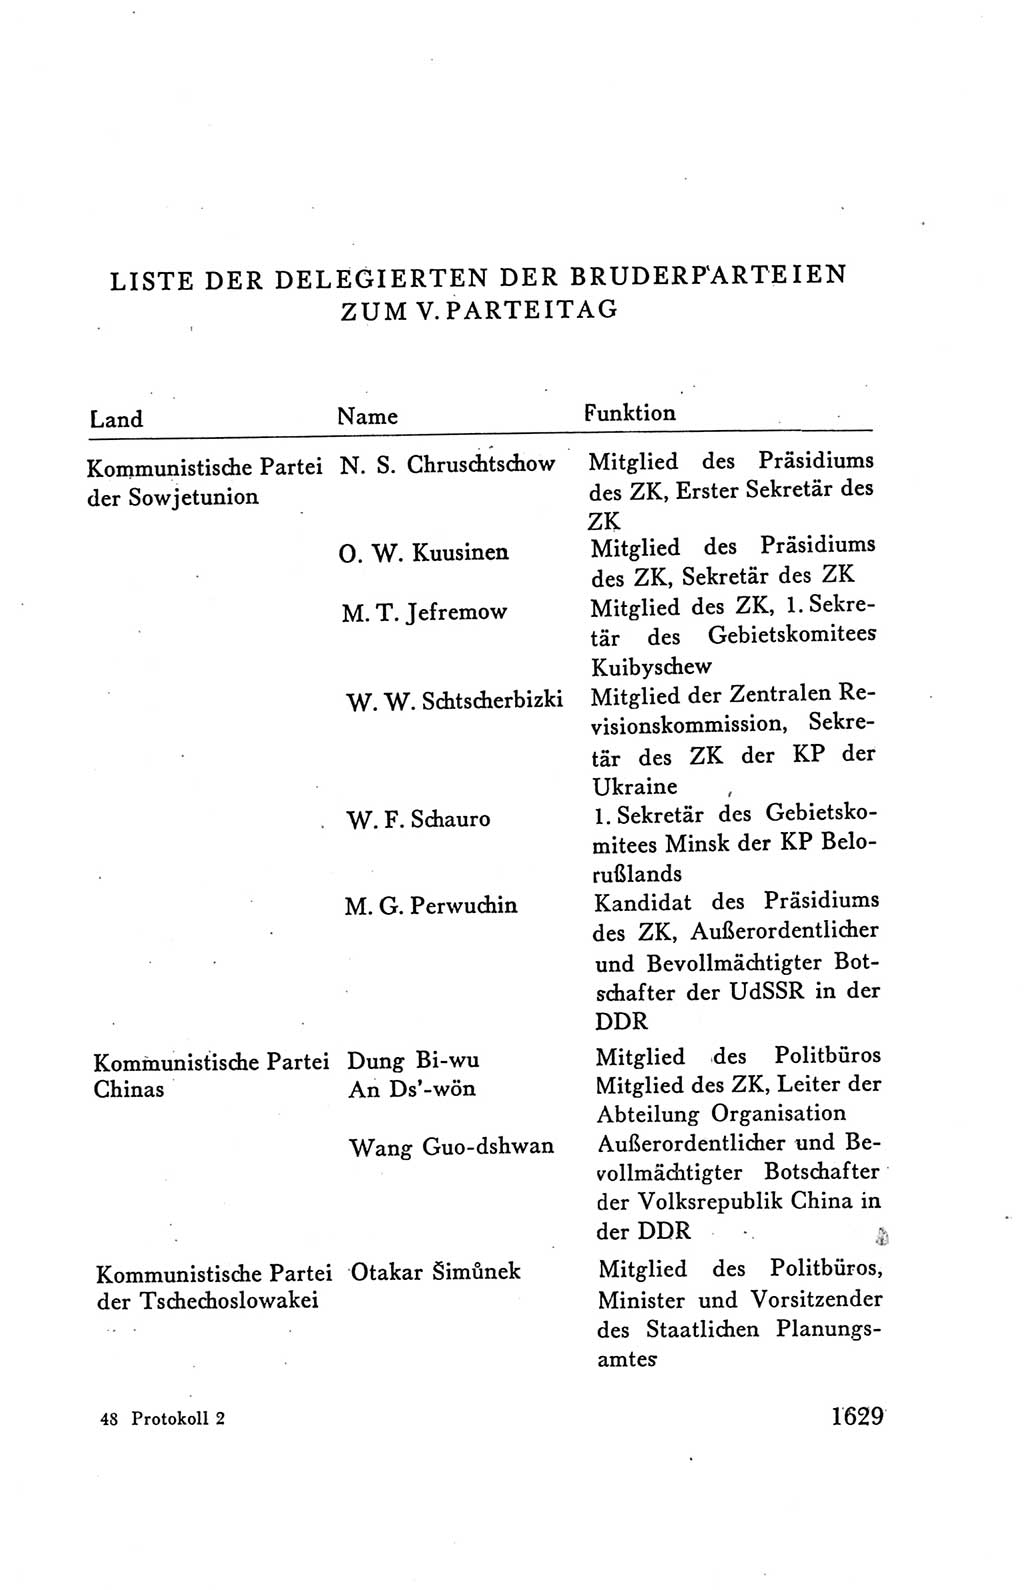 Protokoll der Verhandlungen des Ⅴ. Parteitages der Sozialistischen Einheitspartei Deutschlands (SED) [Deutsche Demokratische Republik (DDR)] 1958, Seite 1629